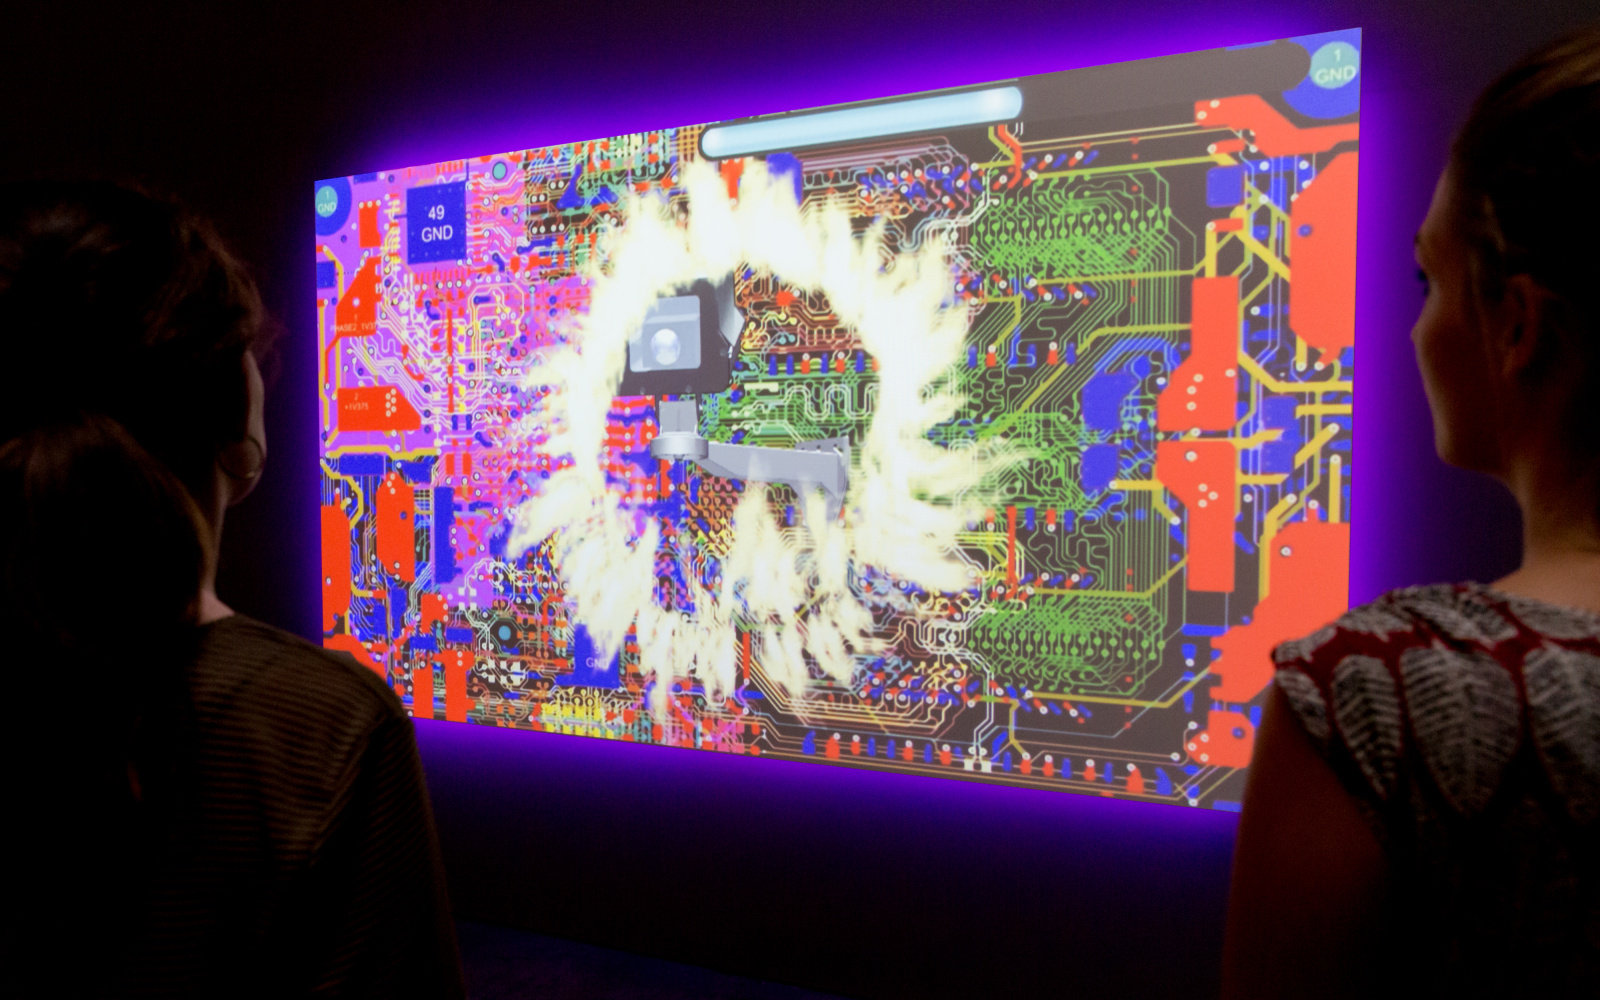 Zwei Besucherinnen betrachten ein Video-Kunstwerk, das eine Collage aus Computer-Hardware und Flammen zeigt